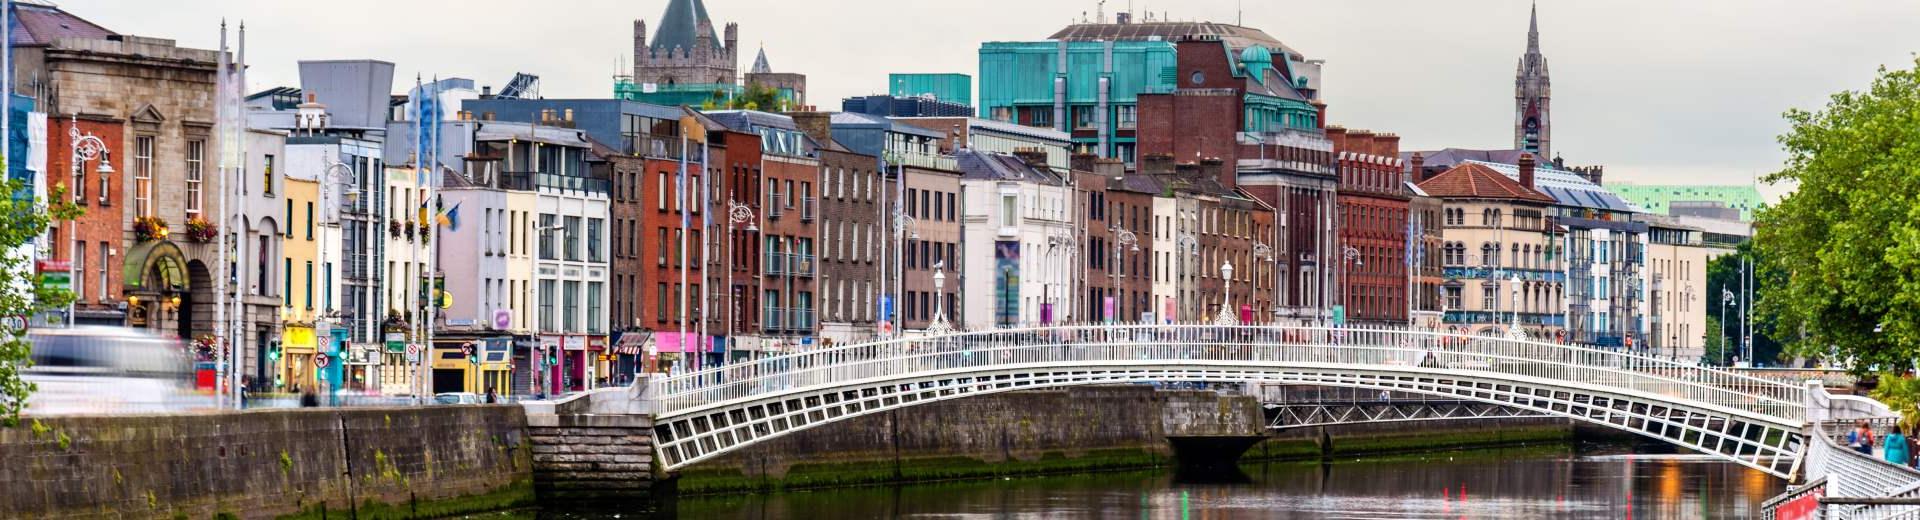 Ferienwohnungen & Ferienhäuser für Urlaub in Dublin - Casamundo